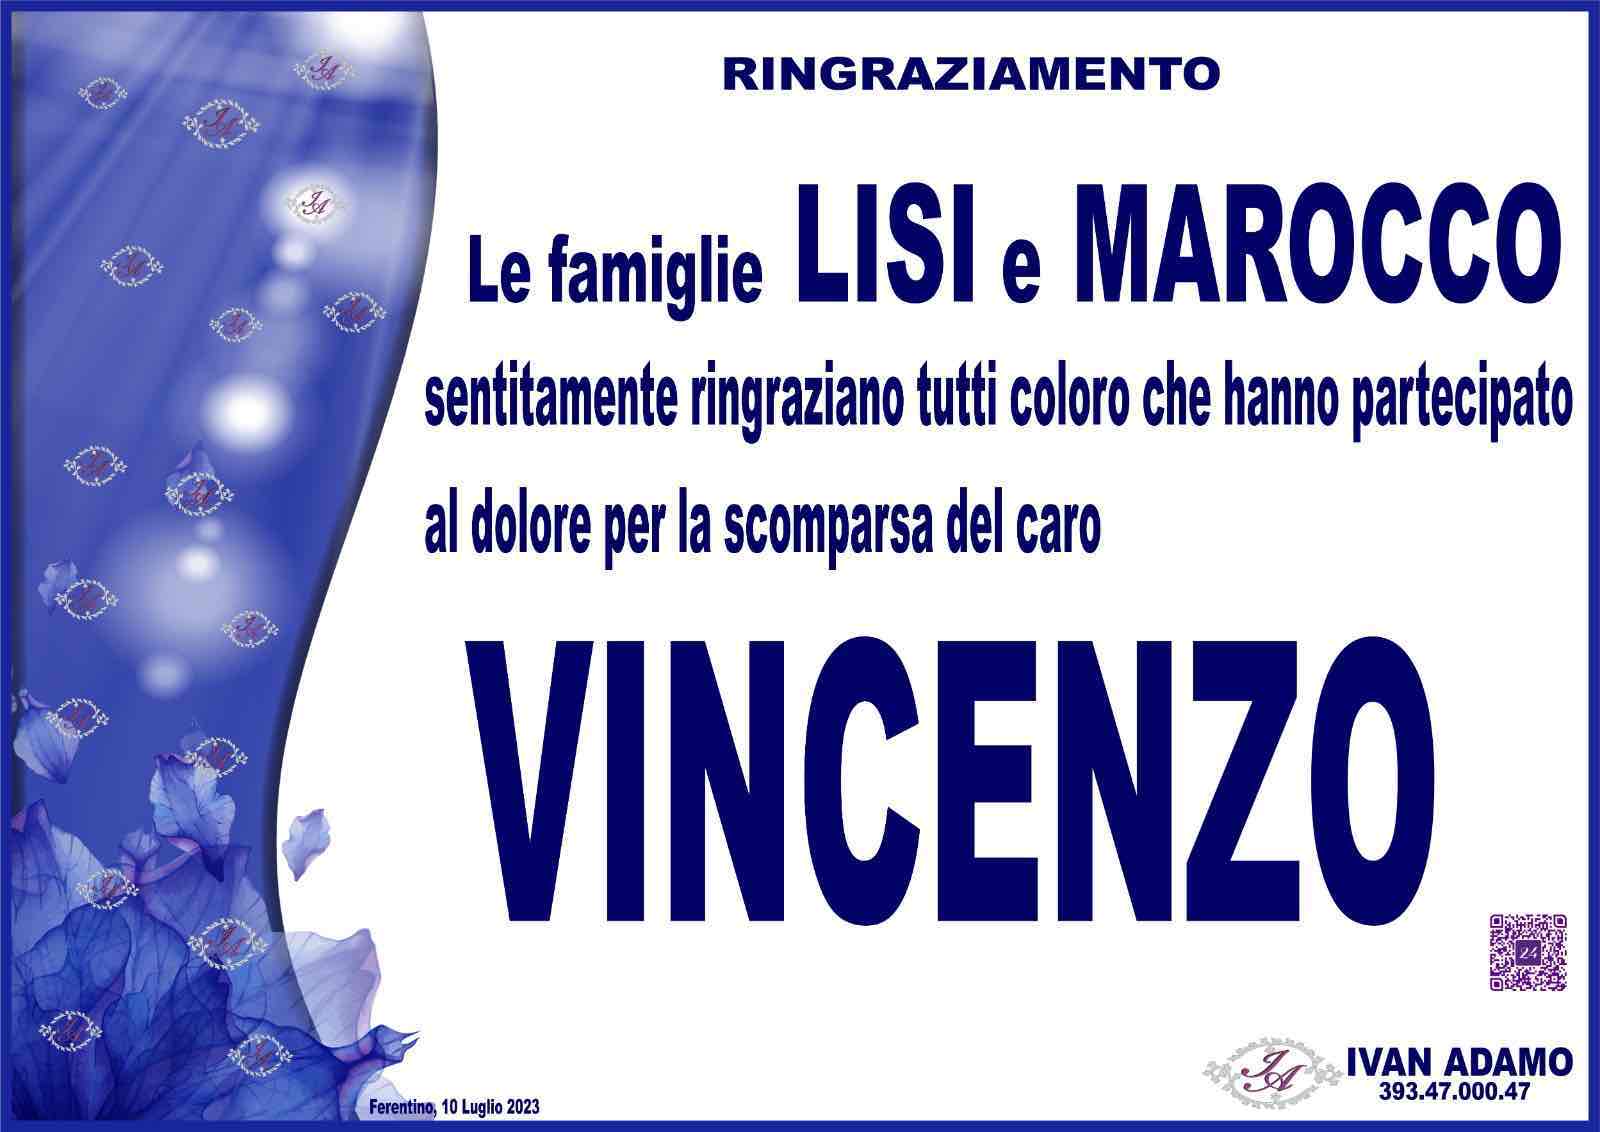 Vincenzo Lisi